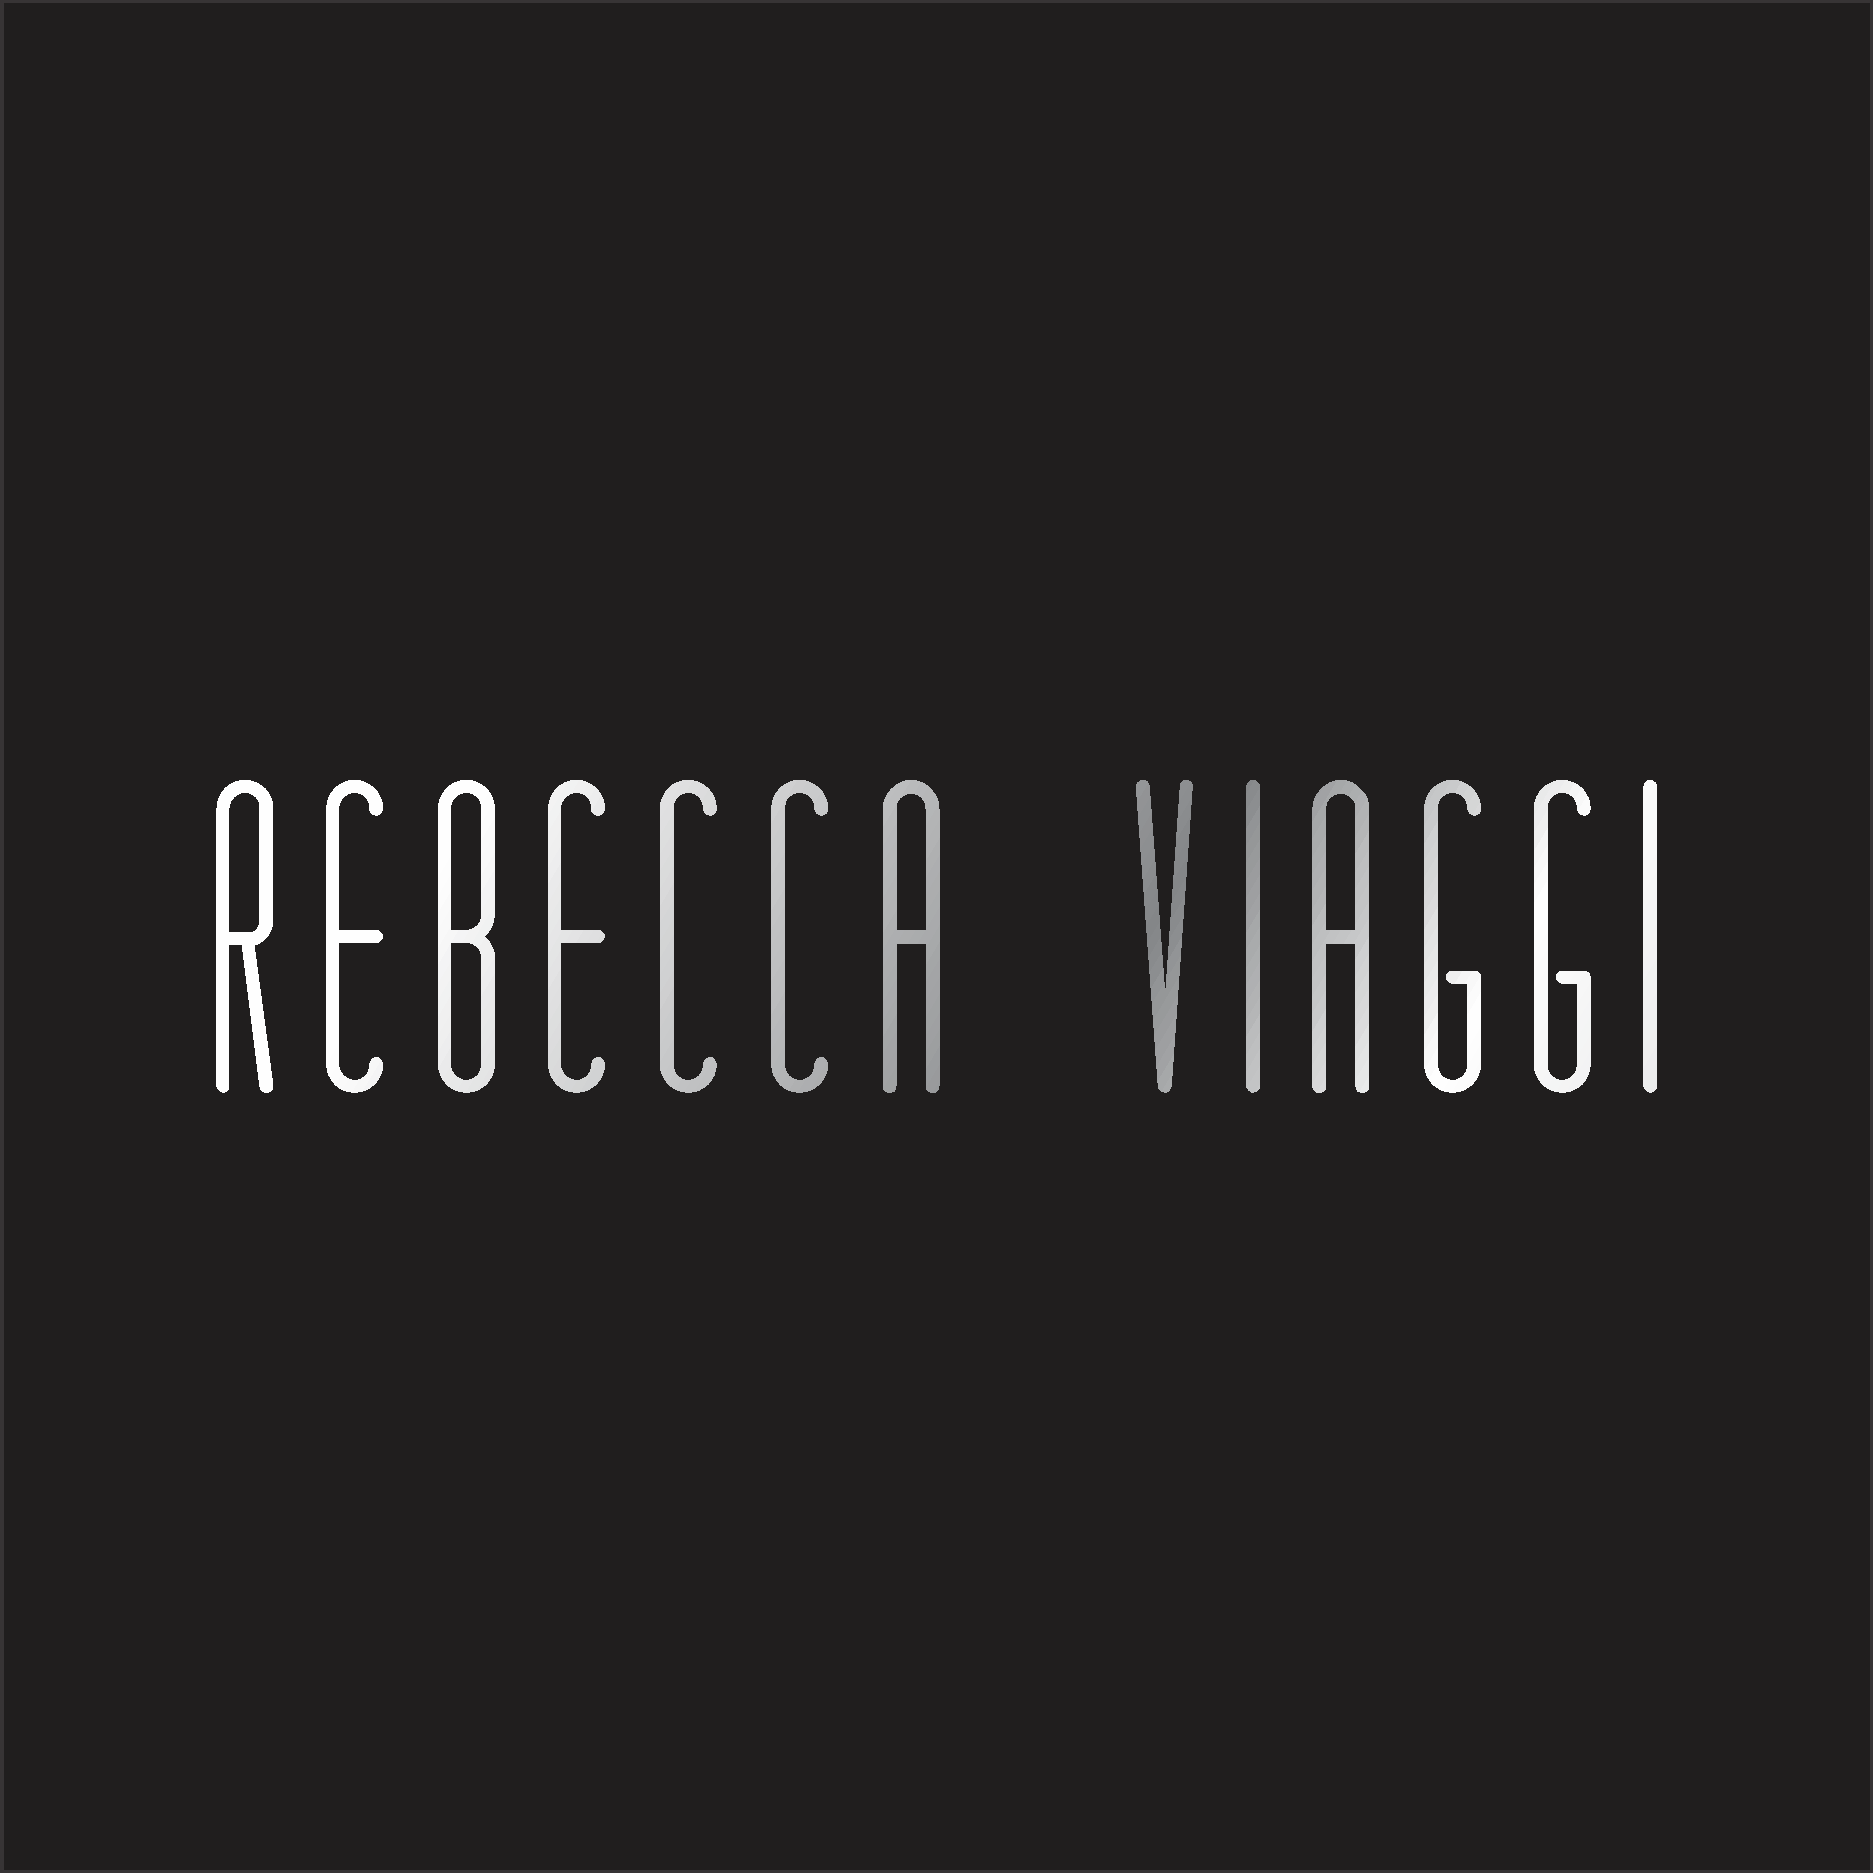 Rebecca Viaggi